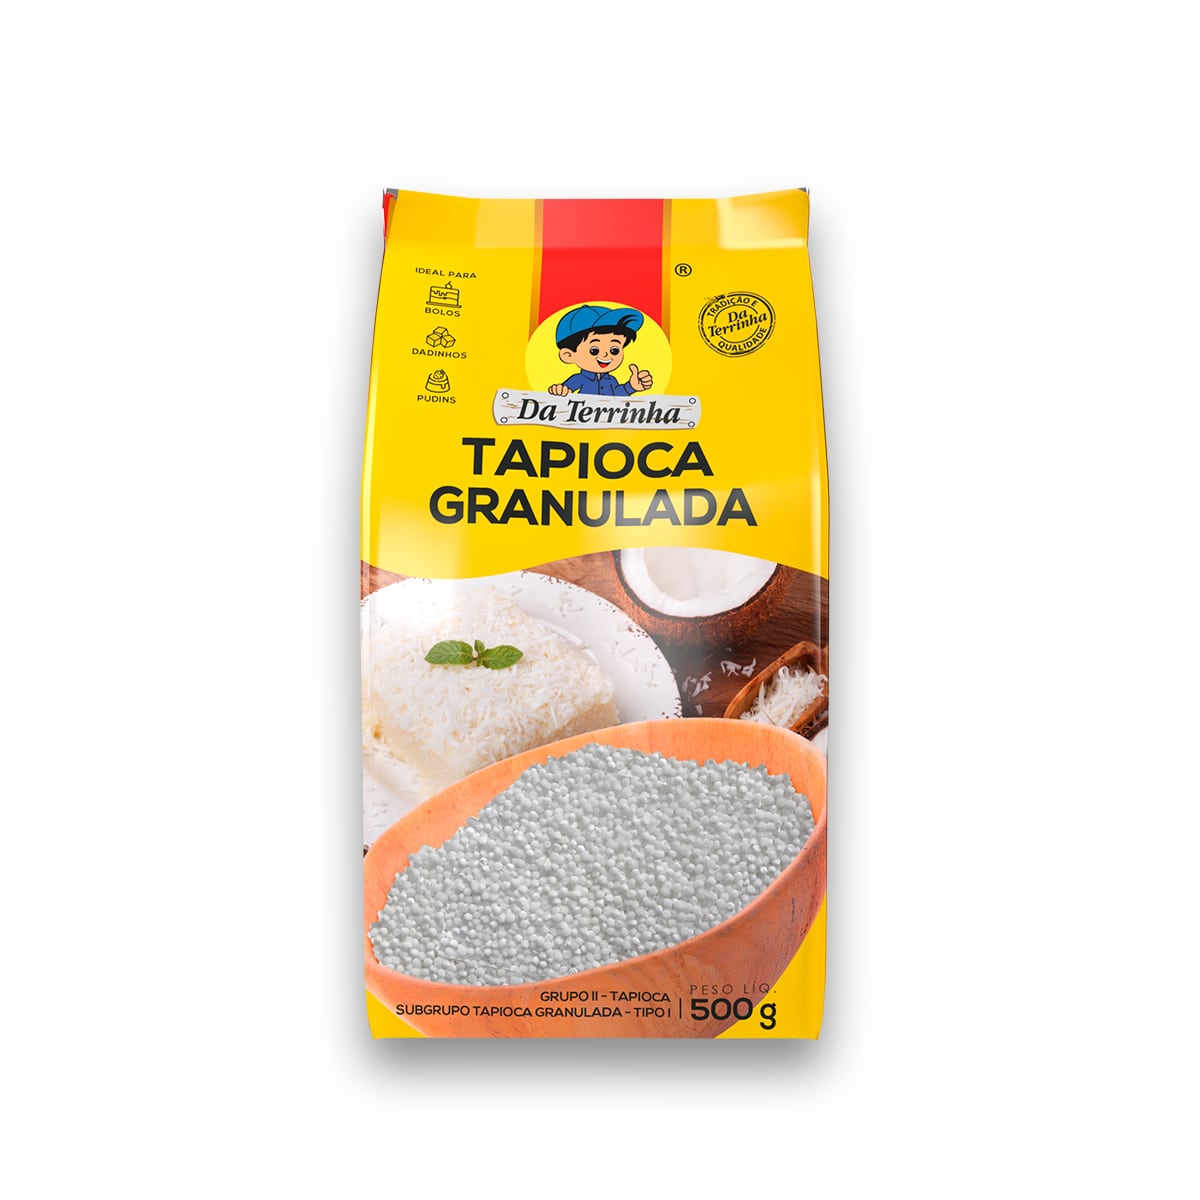 DA TERRINHA - Granulated Tapioca Flour - 500g